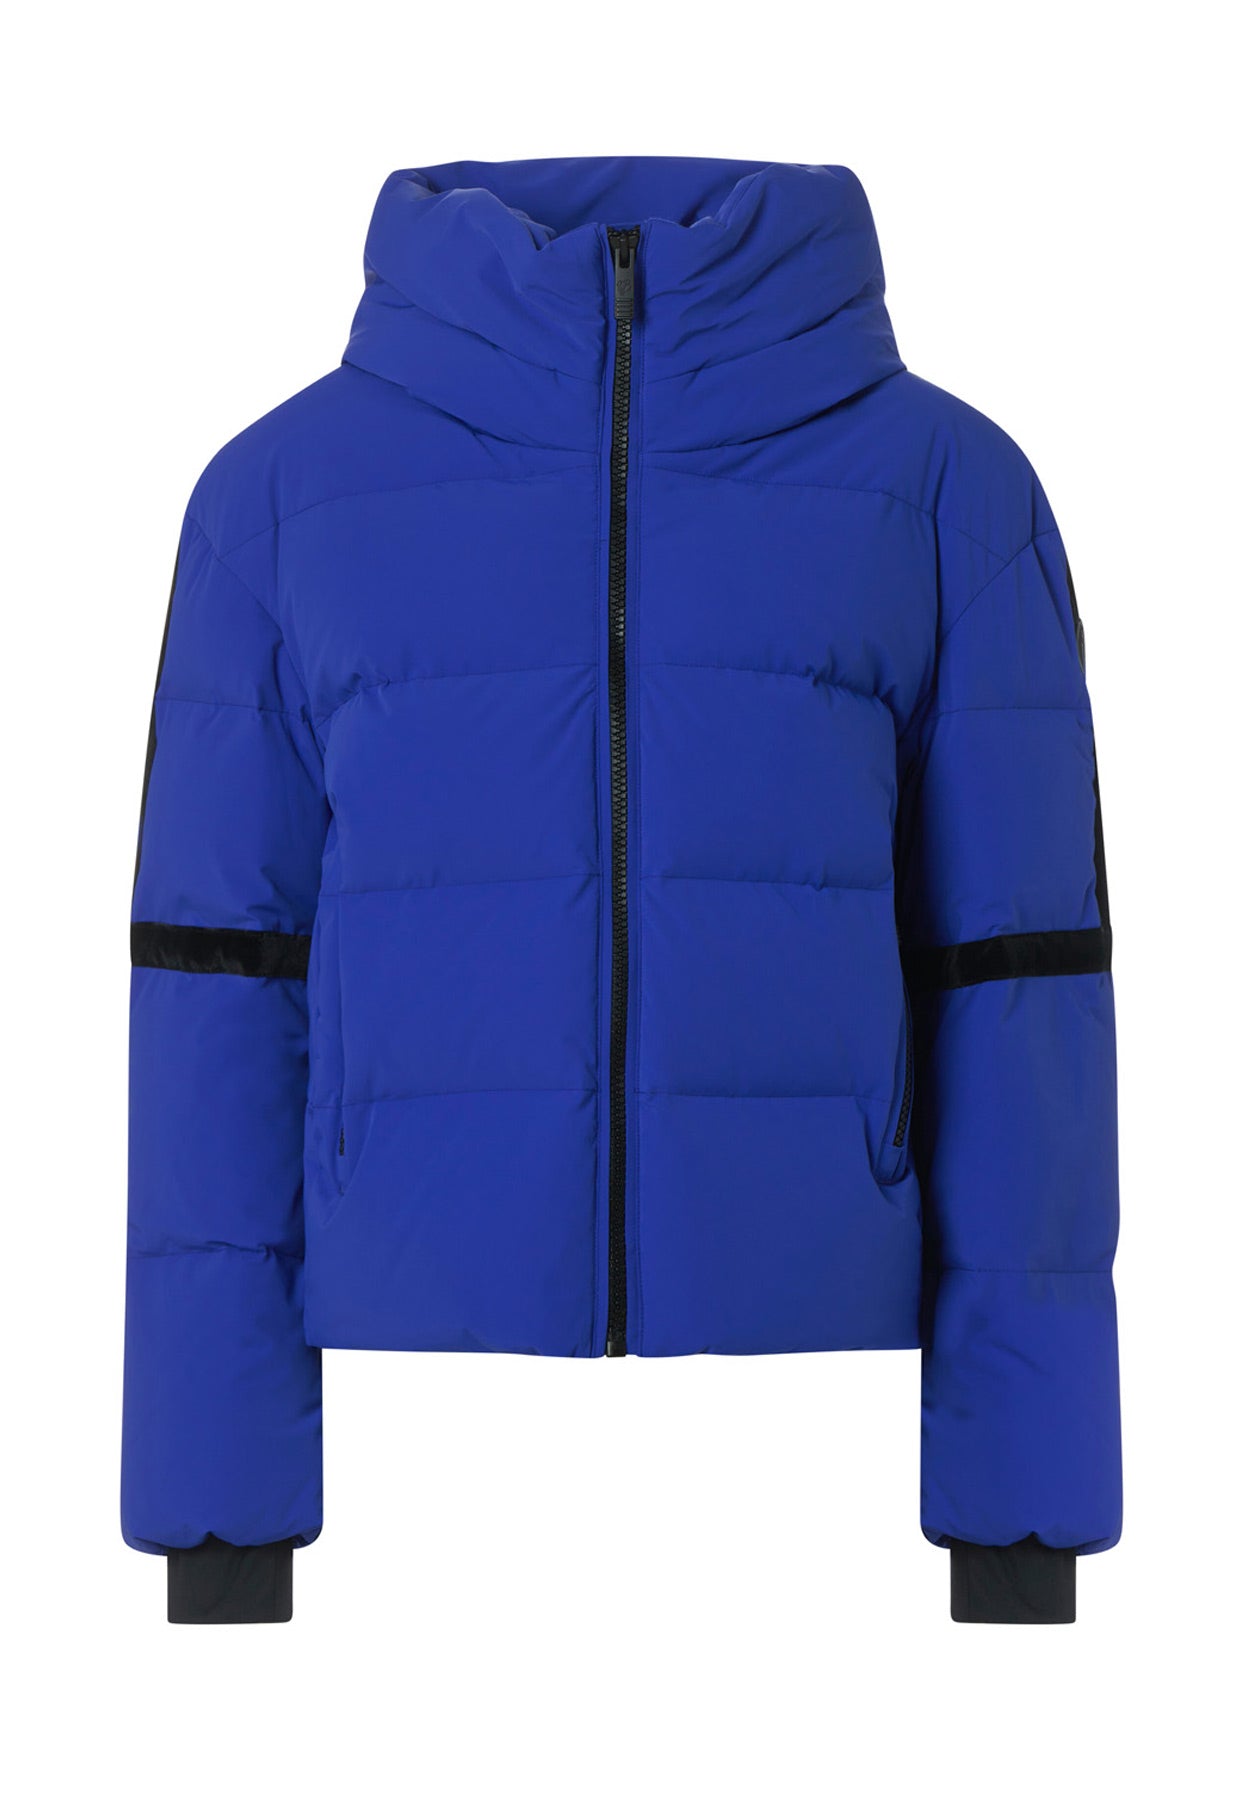 Fusalp Barsy Ski Jacket in Vision Blue